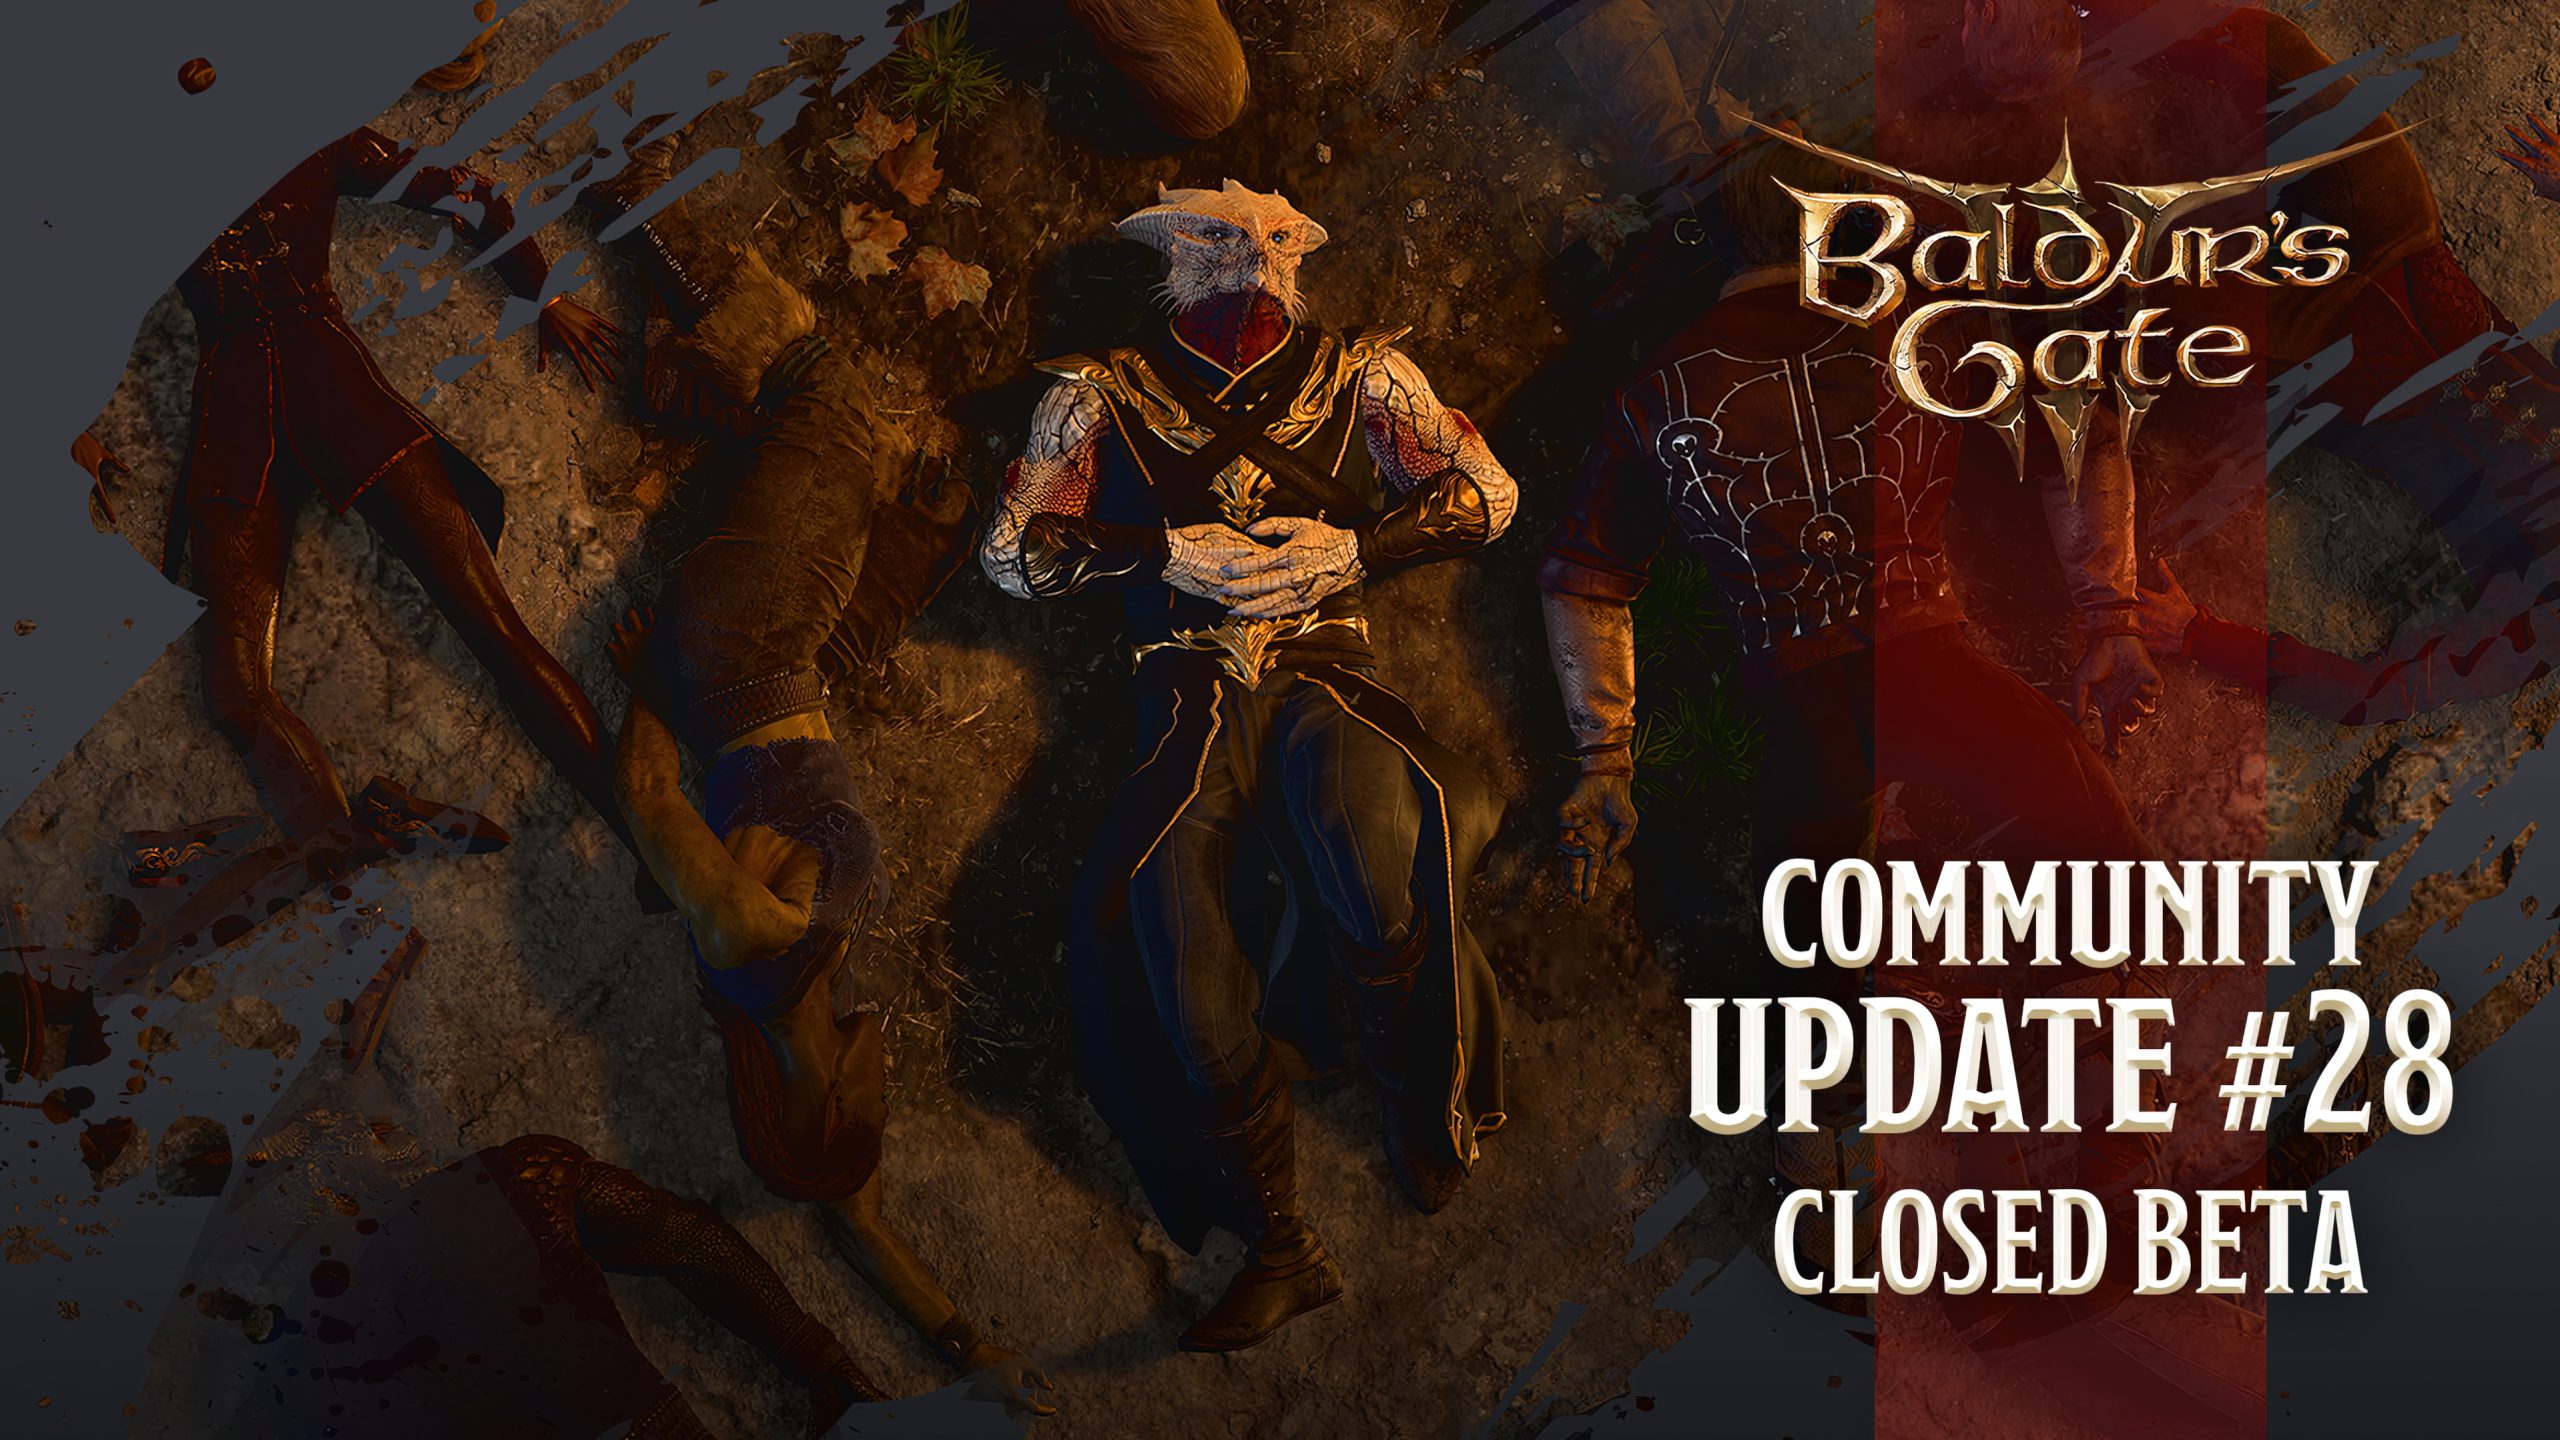 به روز رسانی Baldur’s Gate 3 7 جزئیات بیشتری را قبل از عرضه در سپتامبر دریافت می کند، به روز رسانی نهایی نخواهد بود